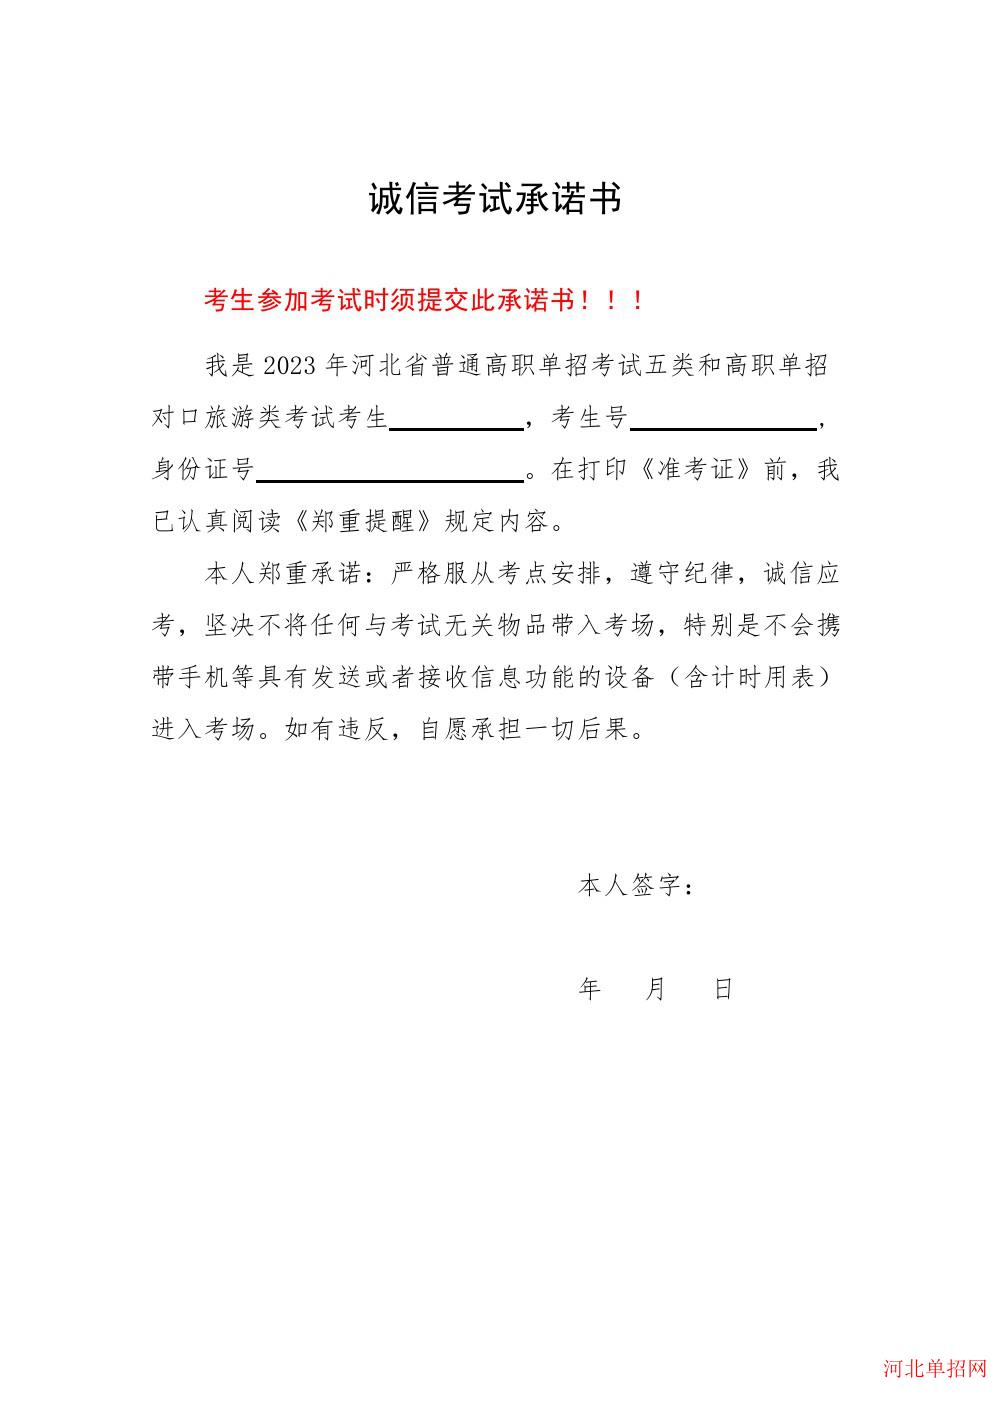 2023年河北省高职单招考试诚信考试承诺书 图9